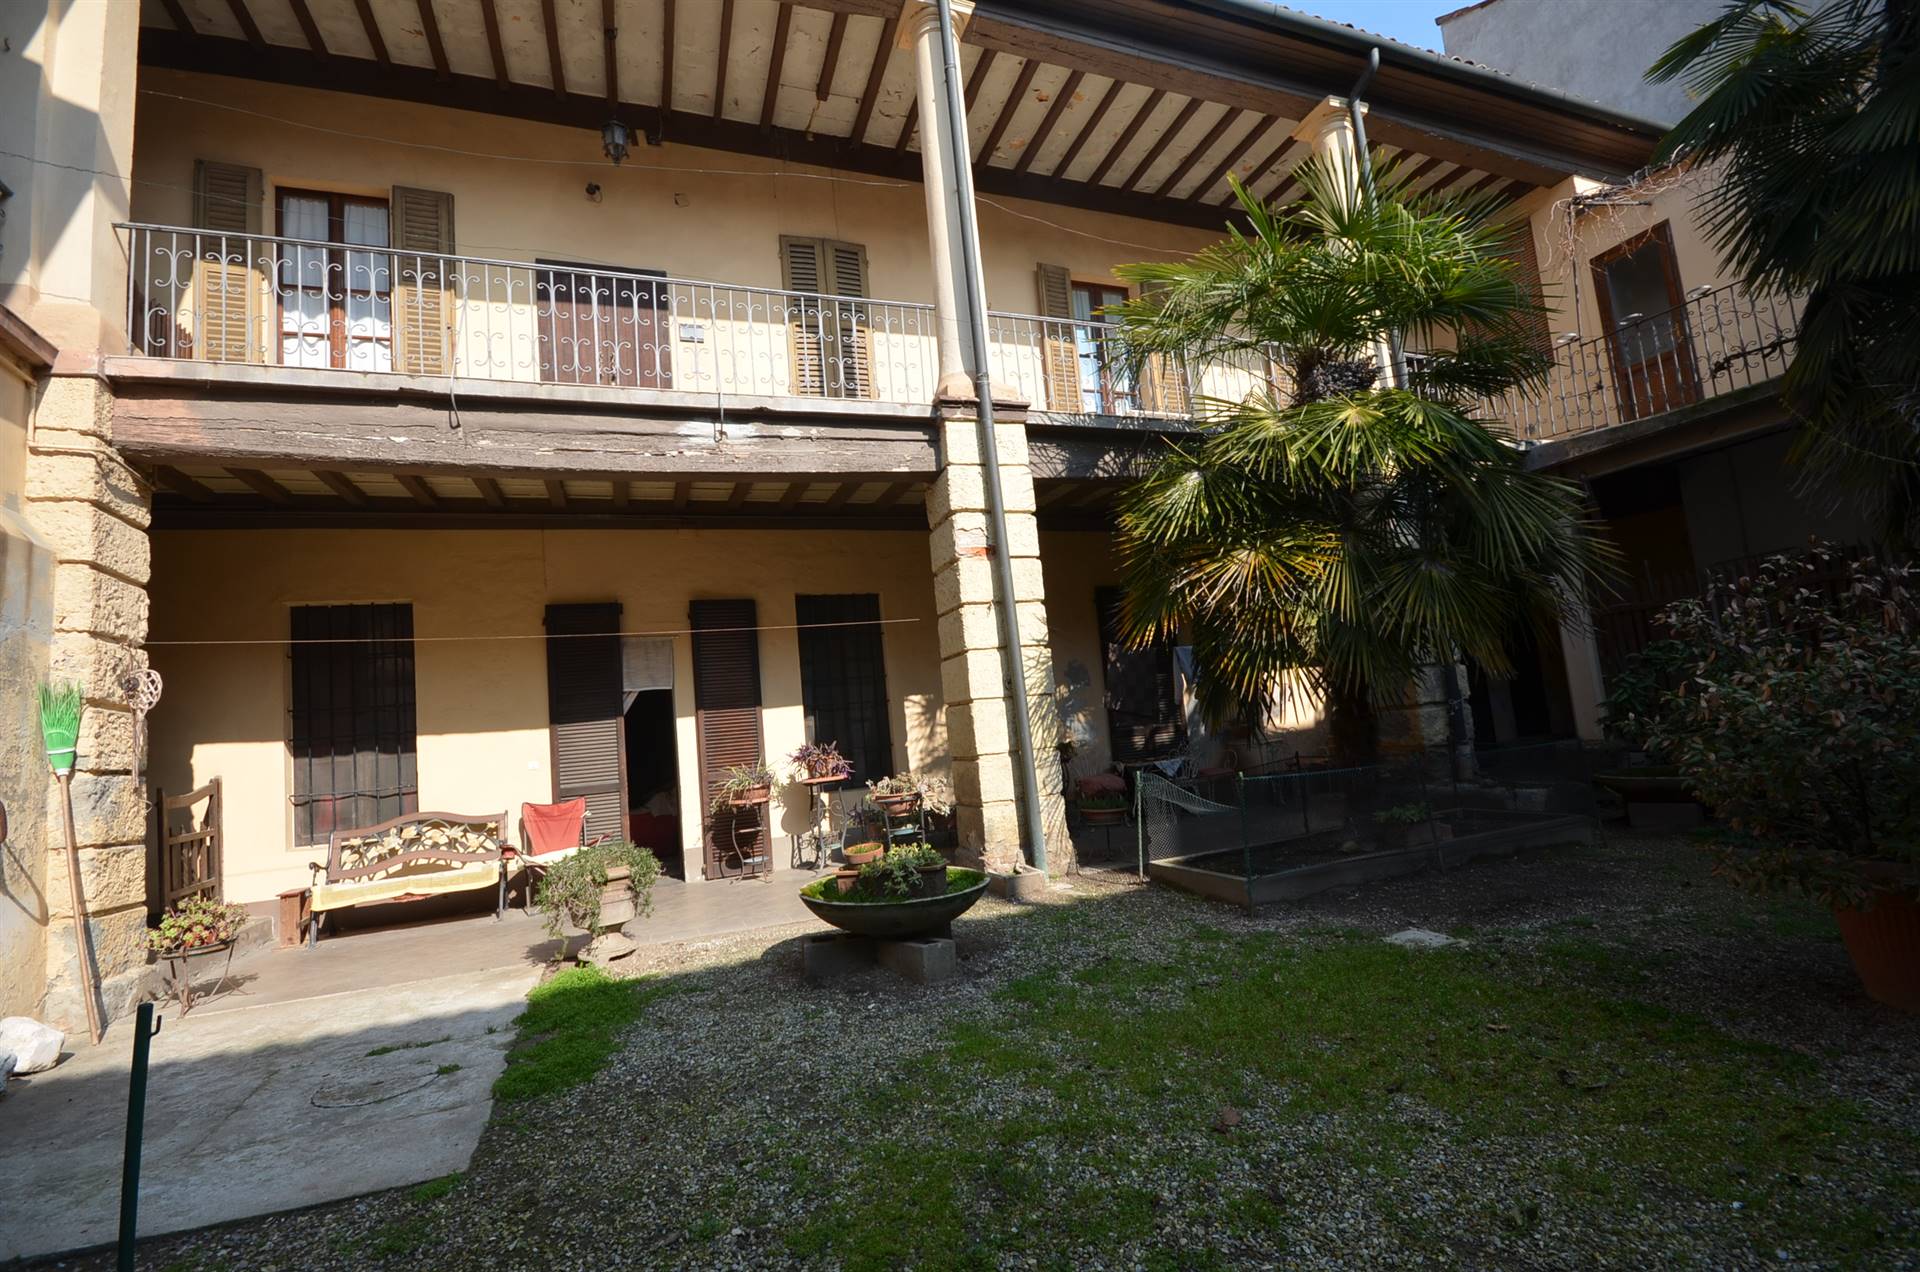 Appartamento in vendita a Soresina, 30 locali, prezzo € 270.000 | CambioCasa.it